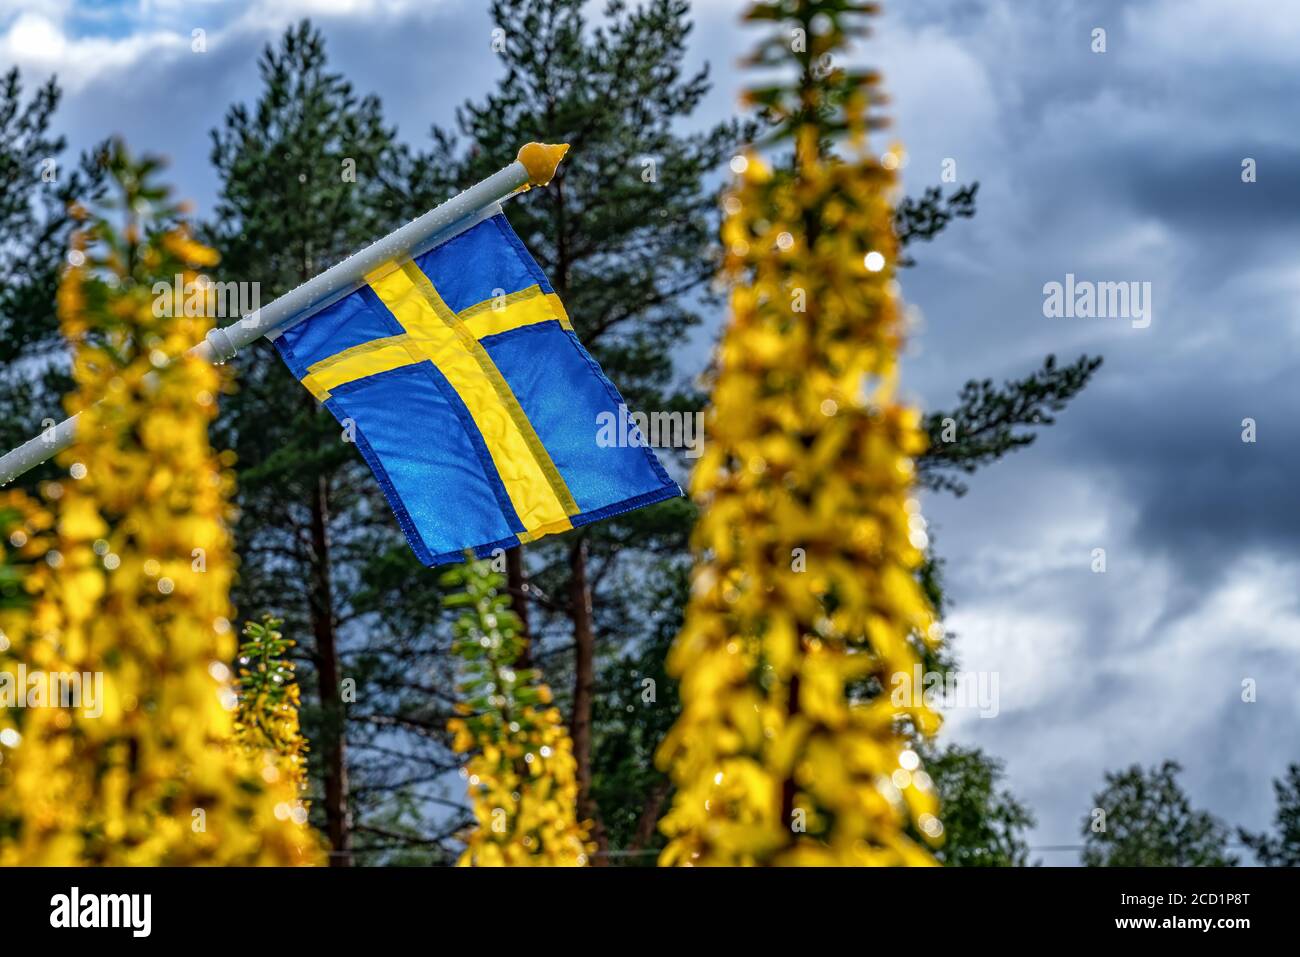 Vue rapprochée du drapeau suédois avec mât humide agitant lentement par temps presque calme après la pluie estivale. Fleurs jaunes floues, forêt verte et b foncé Banque D'Images